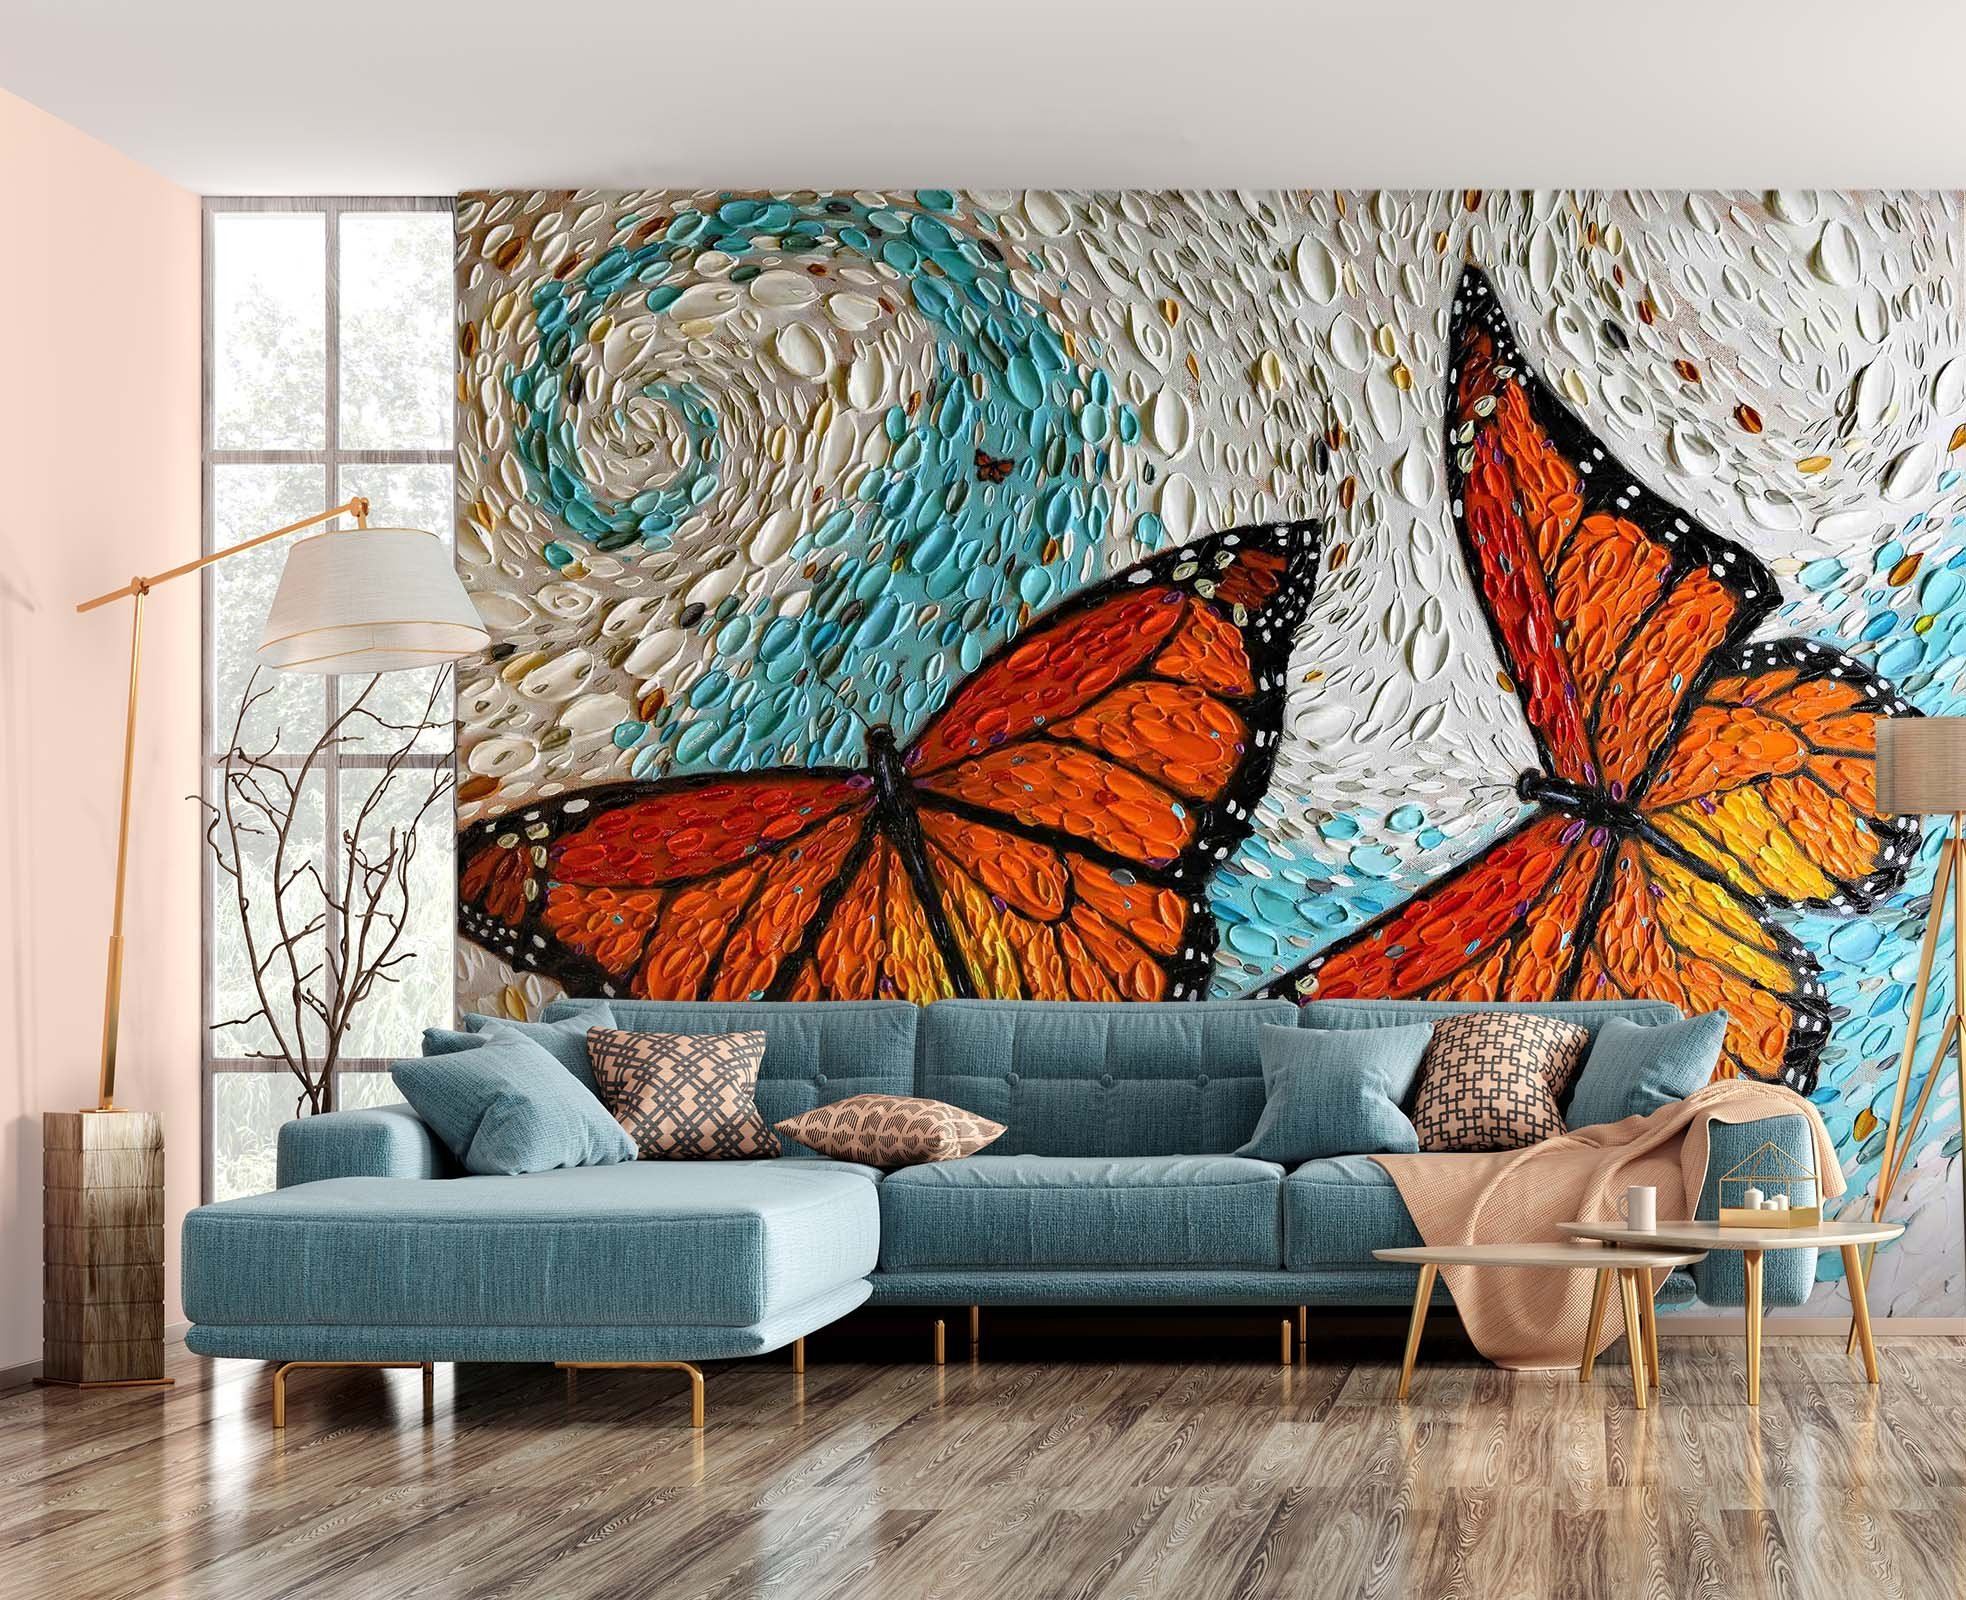 3D Butterfly Shell 1421 Dena Tollefson Wall Mural Wall Murals Wallpaper AJ Wallpaper 2 